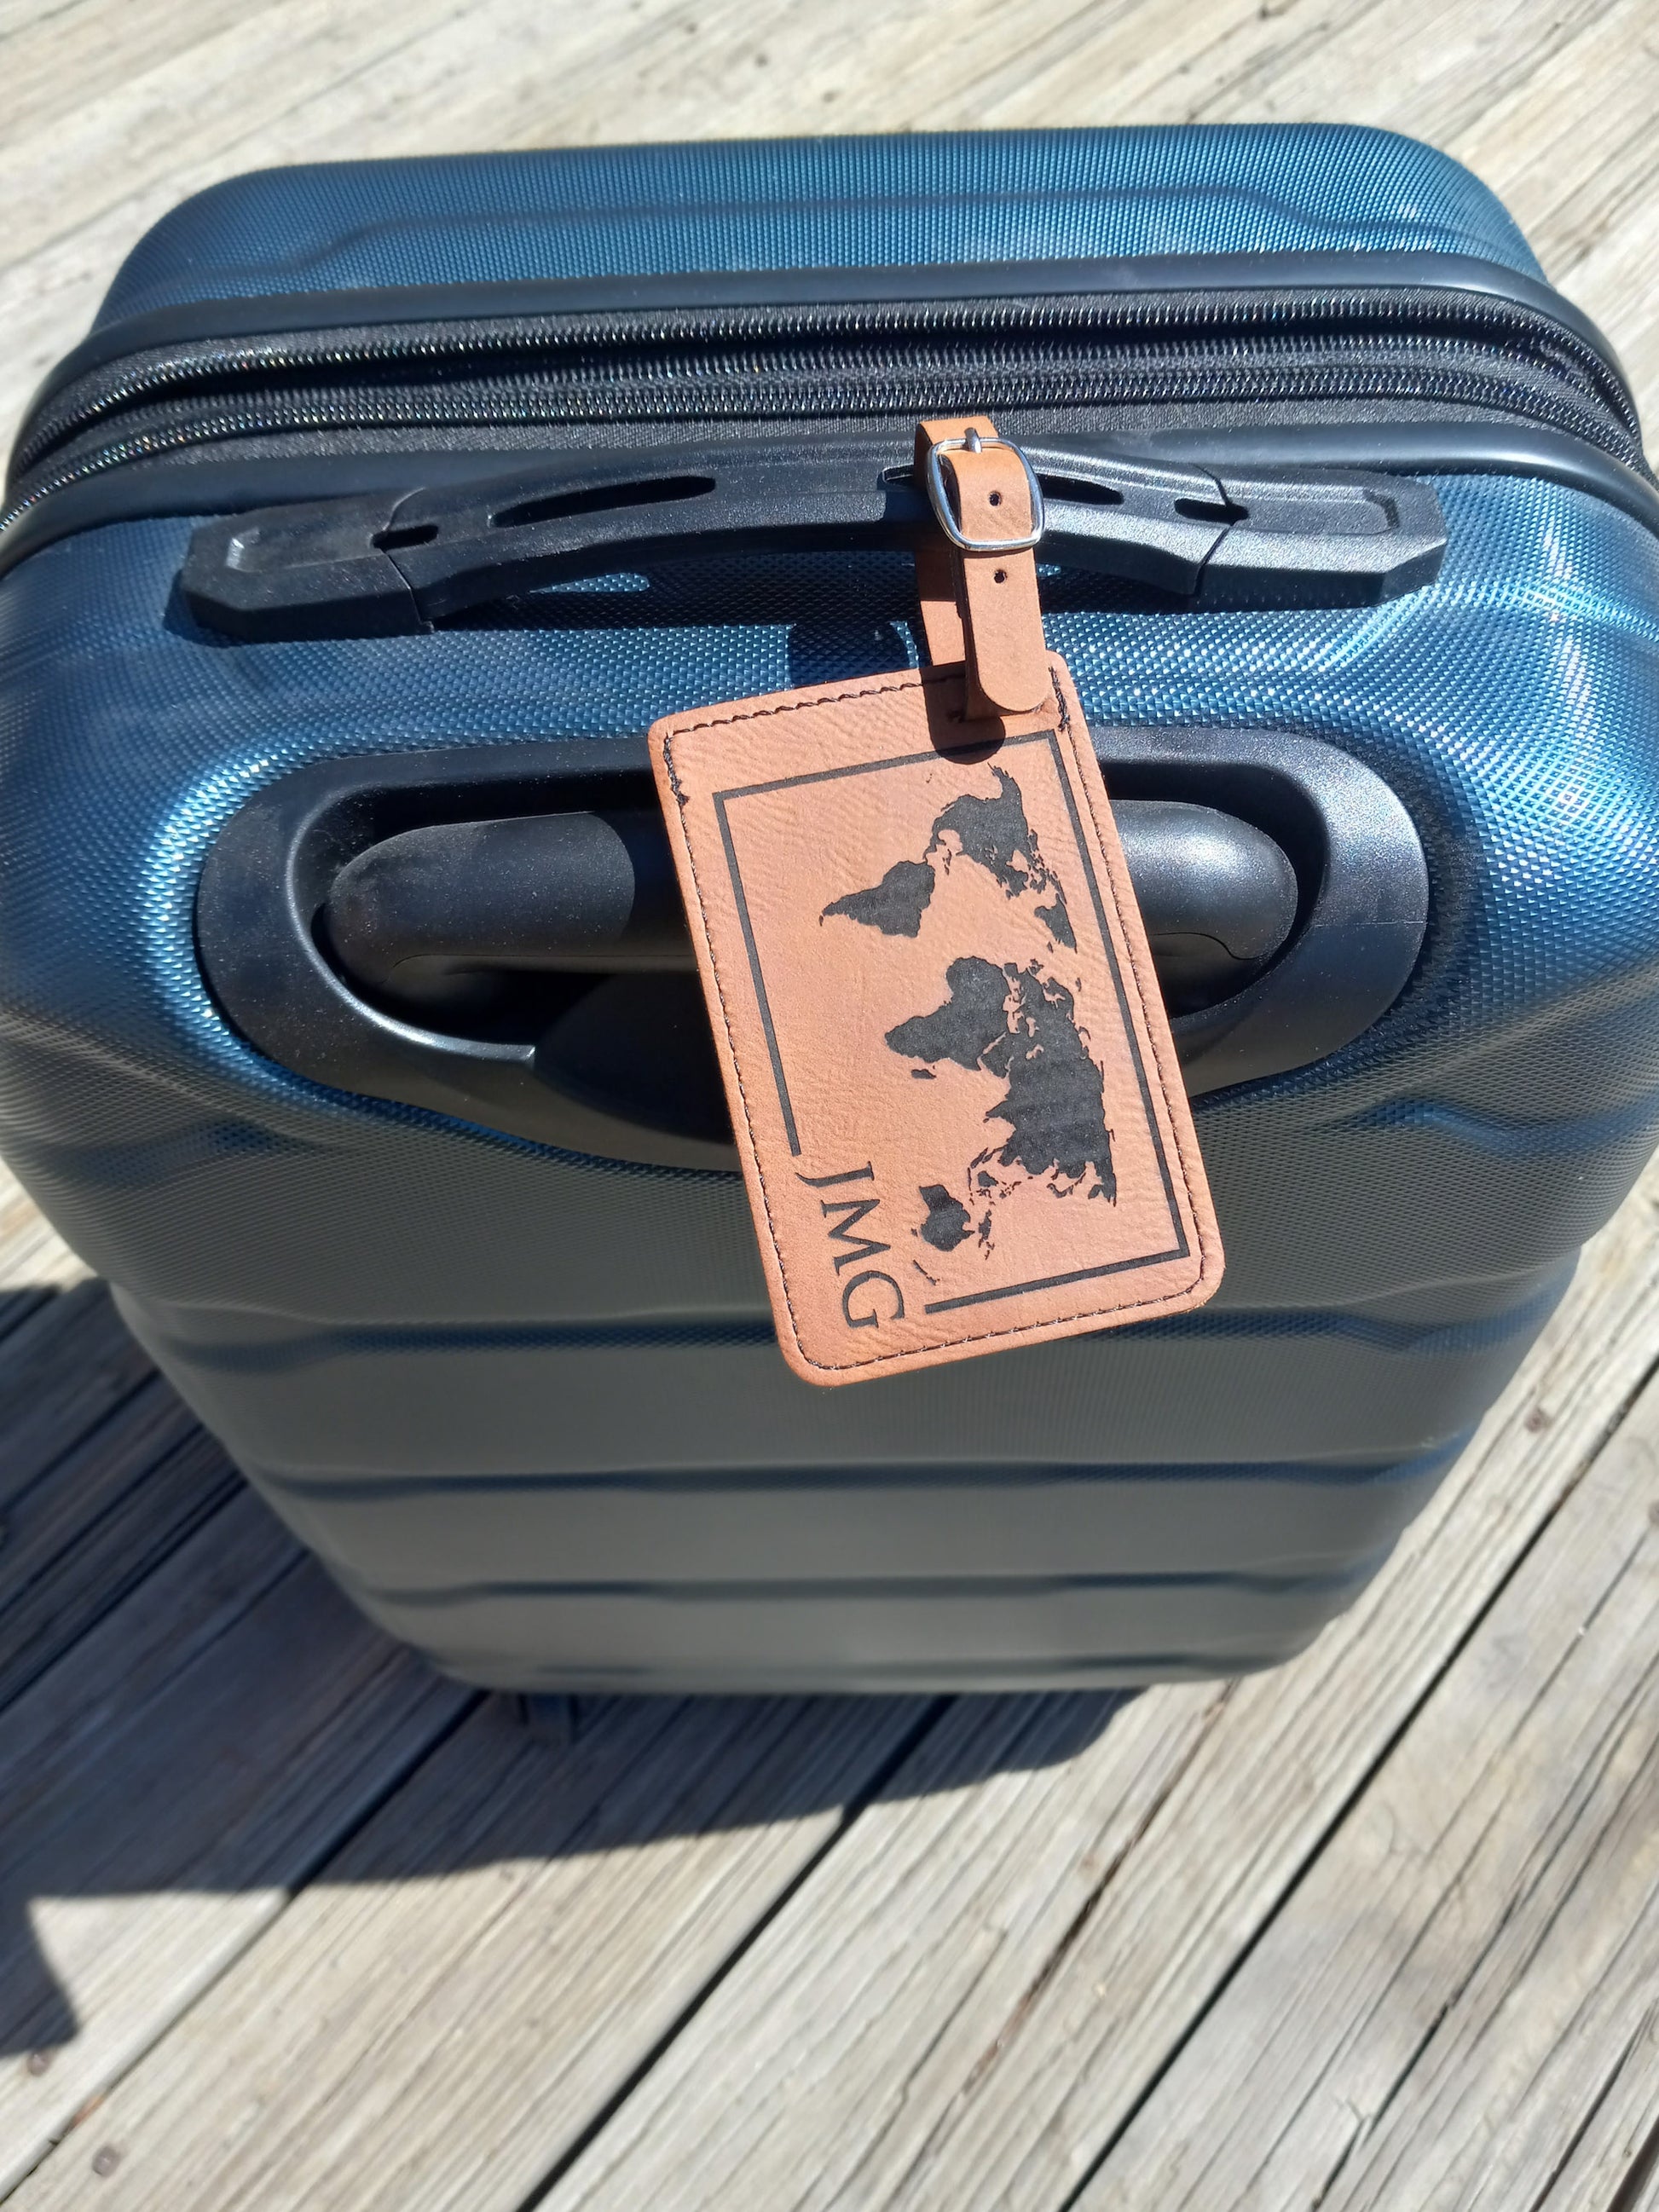 away luggage personalization